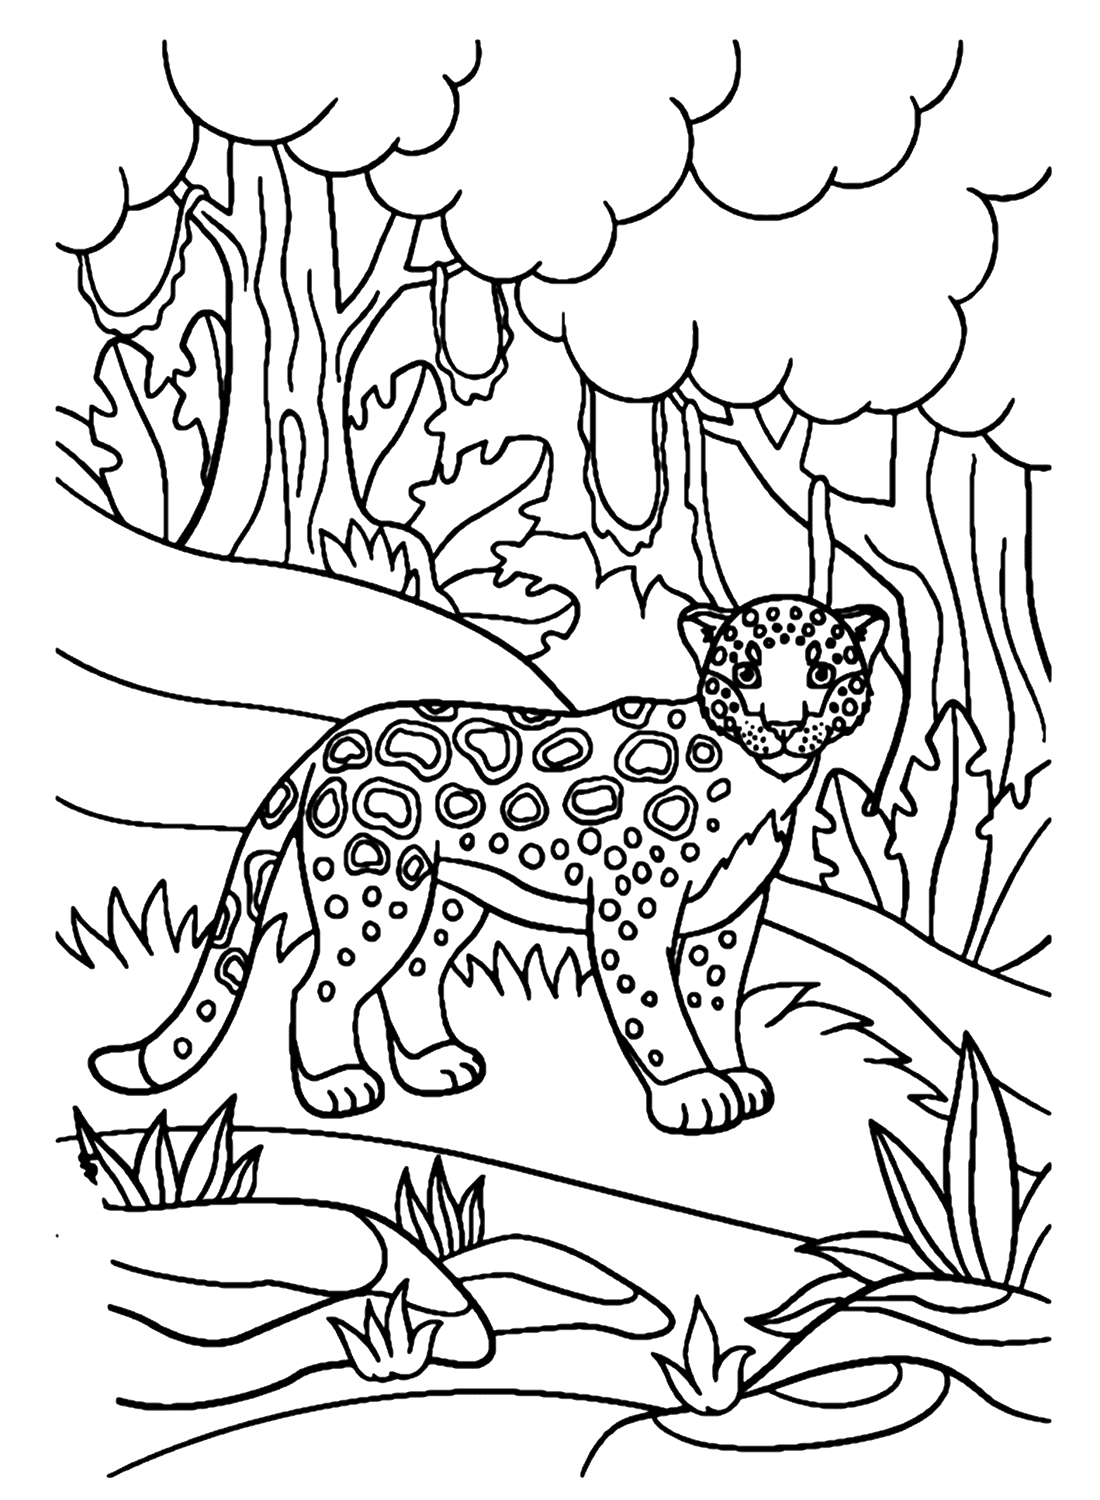 Giaguaro che cammina nella foresta from Giaguaro